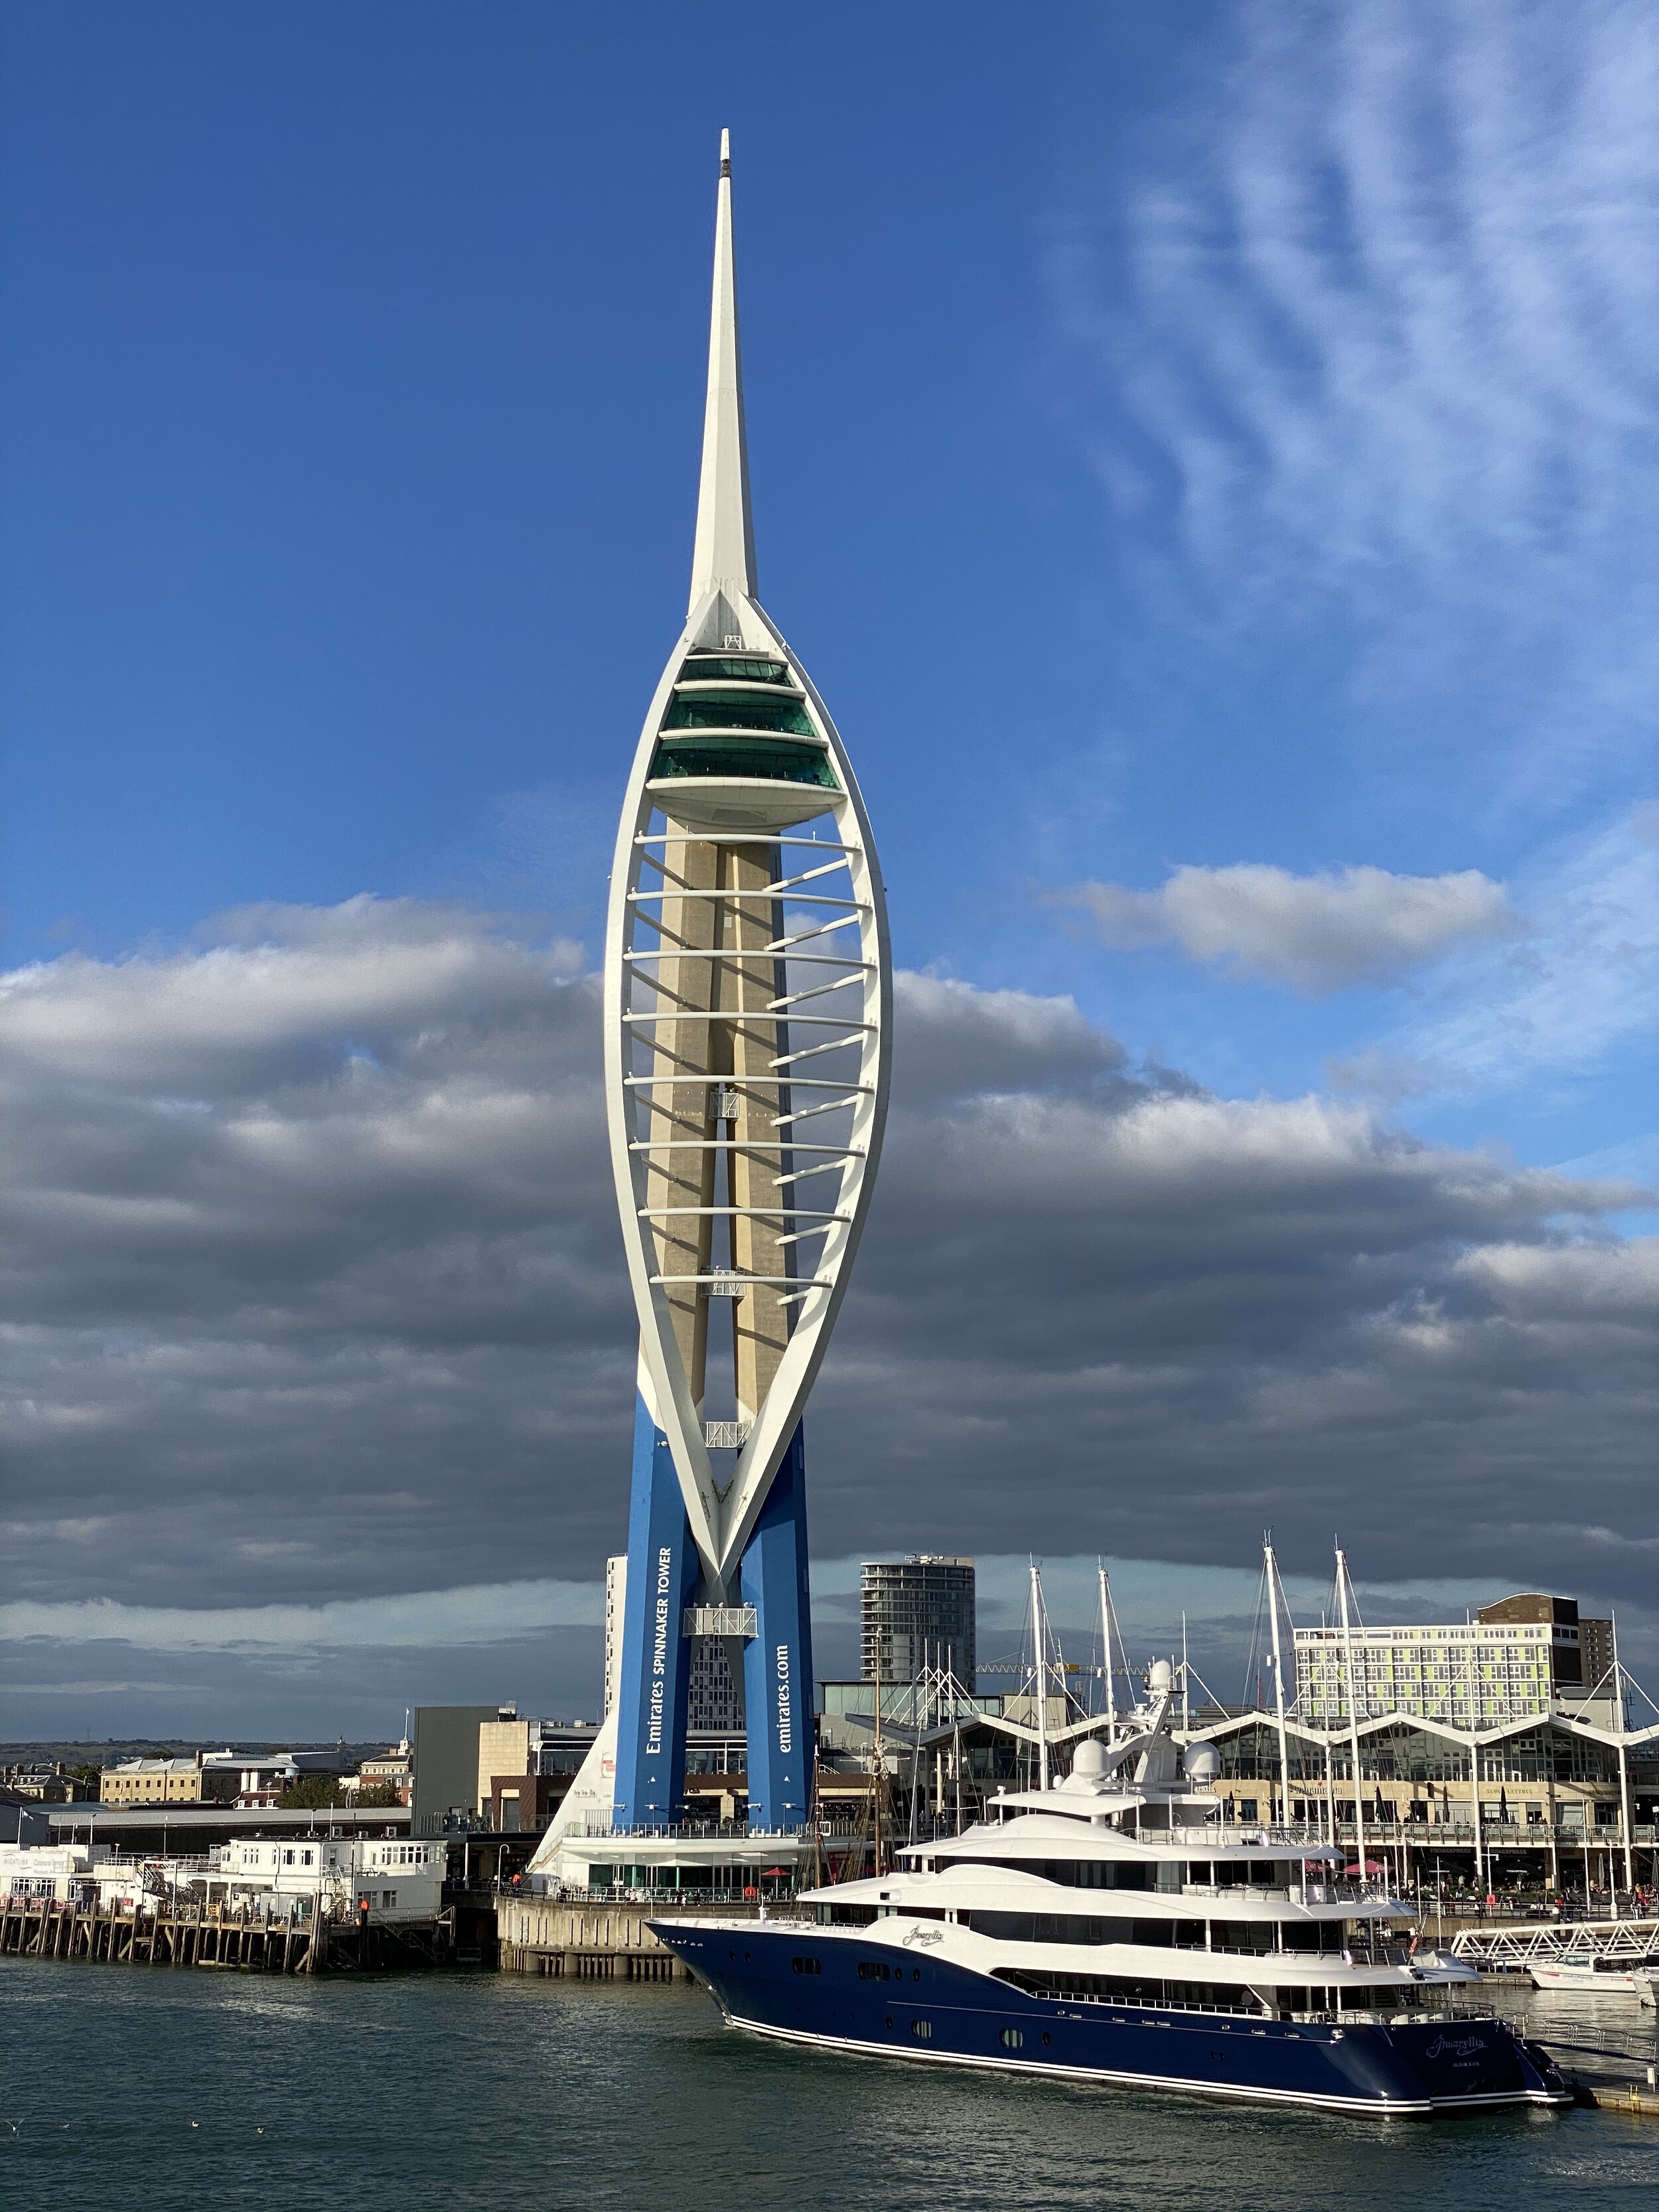 Portsmouth's landmark Spinnaker Tower.